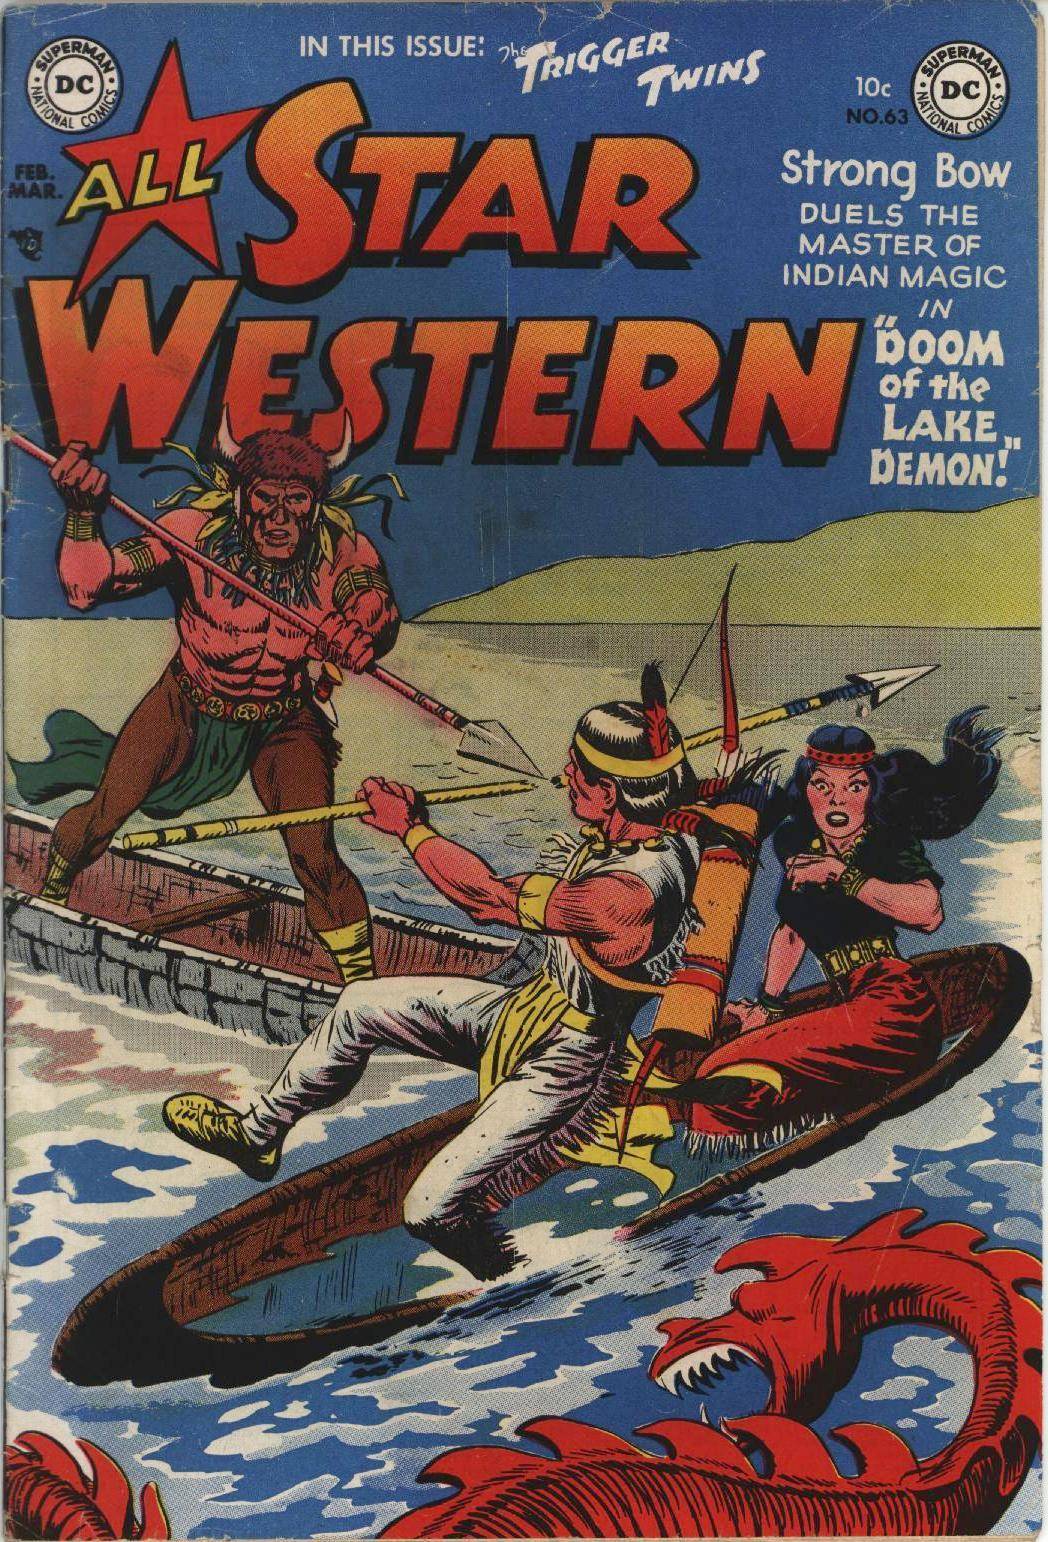 Star Western v1 063 1952